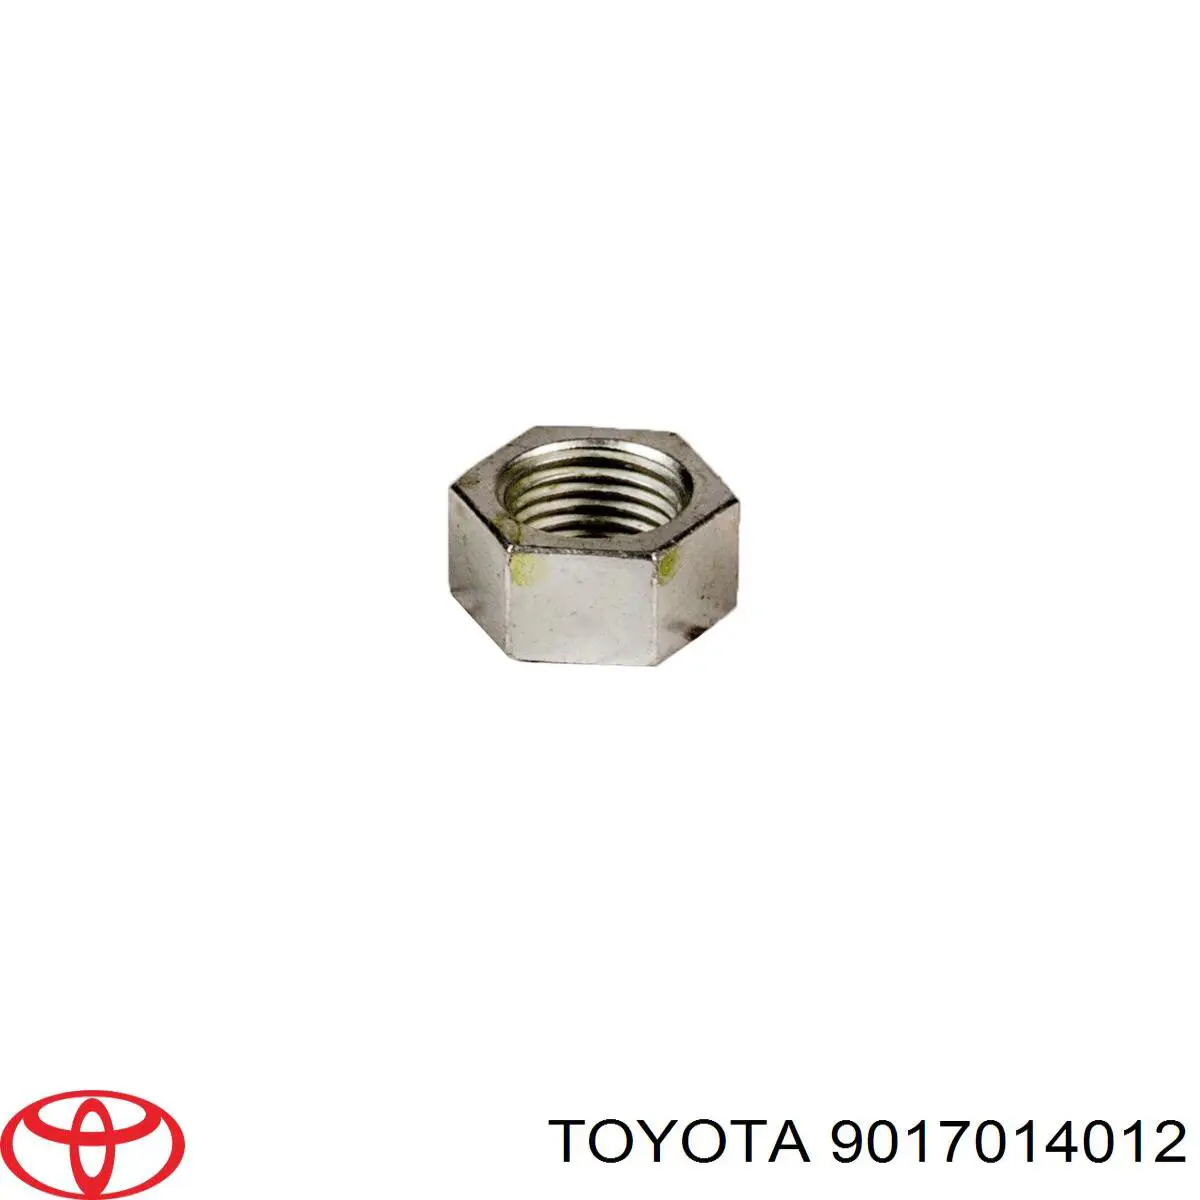 9017014012 Toyota arandela excentrica,palanca inferior, vehiculo proteccion especial